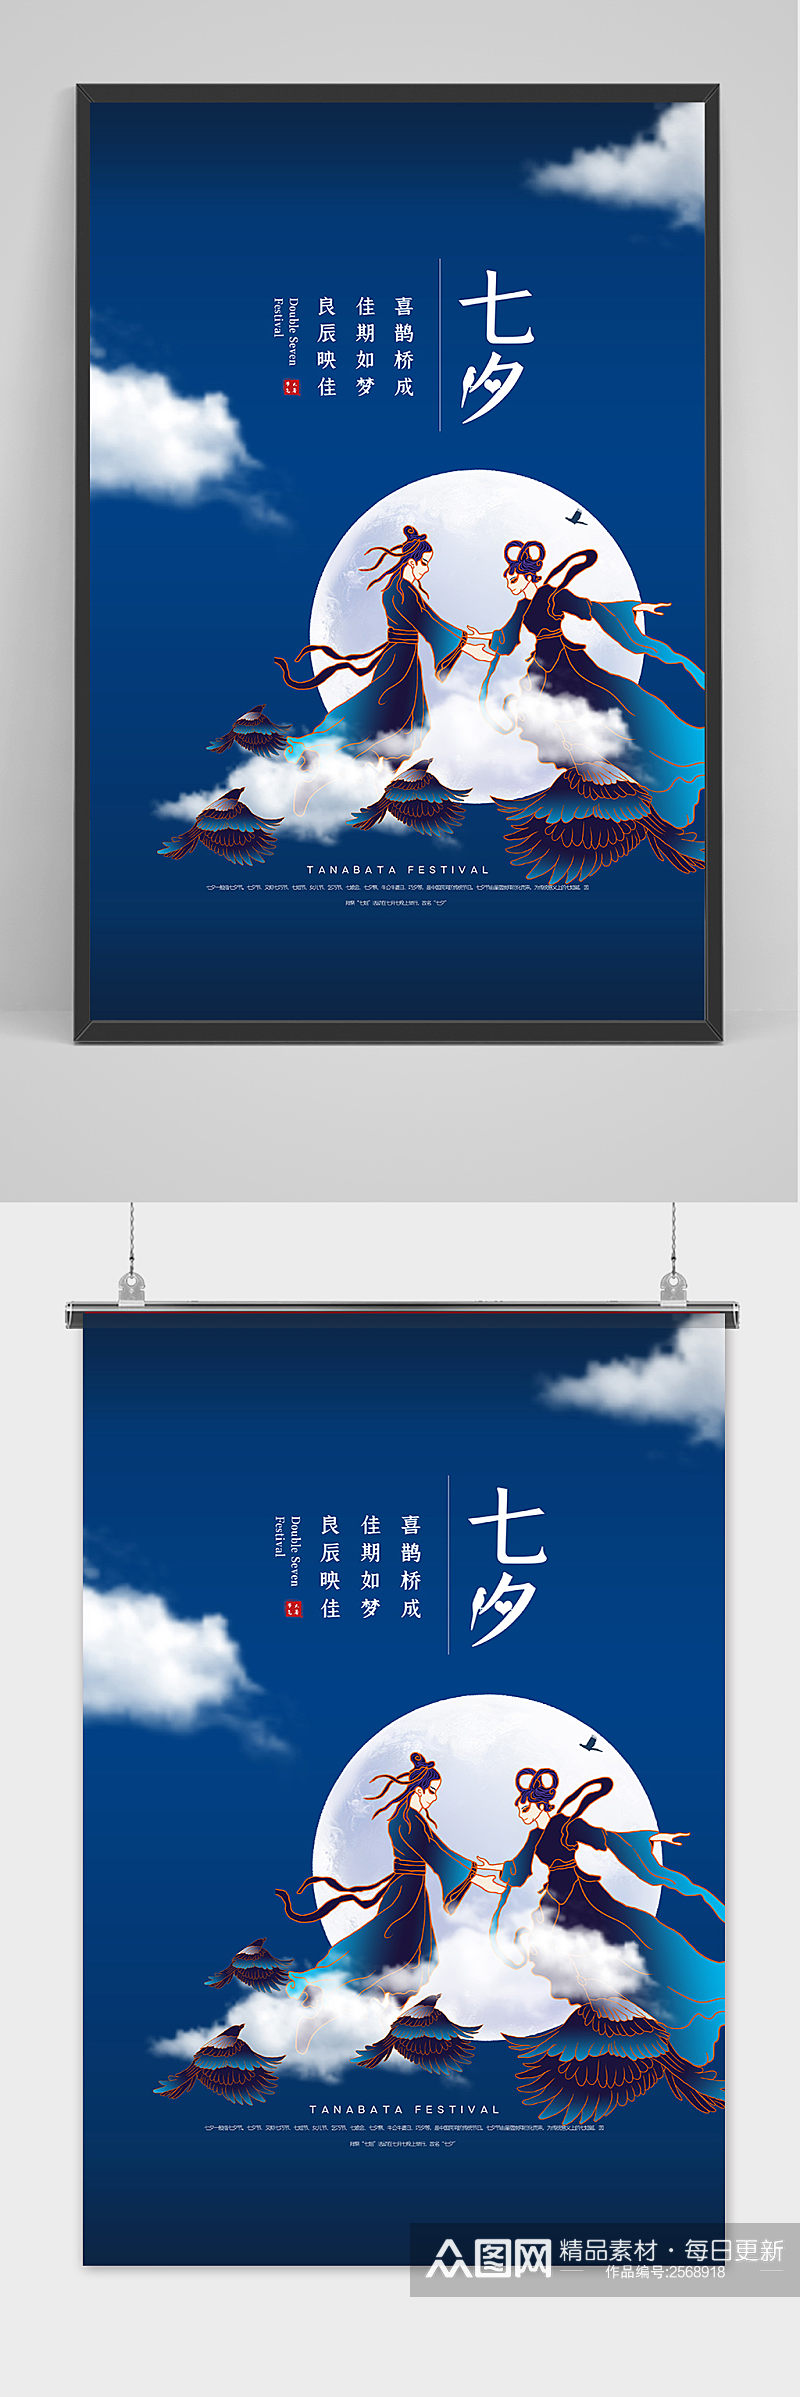 蓝色手绘中国传统节日七夕节海报素材